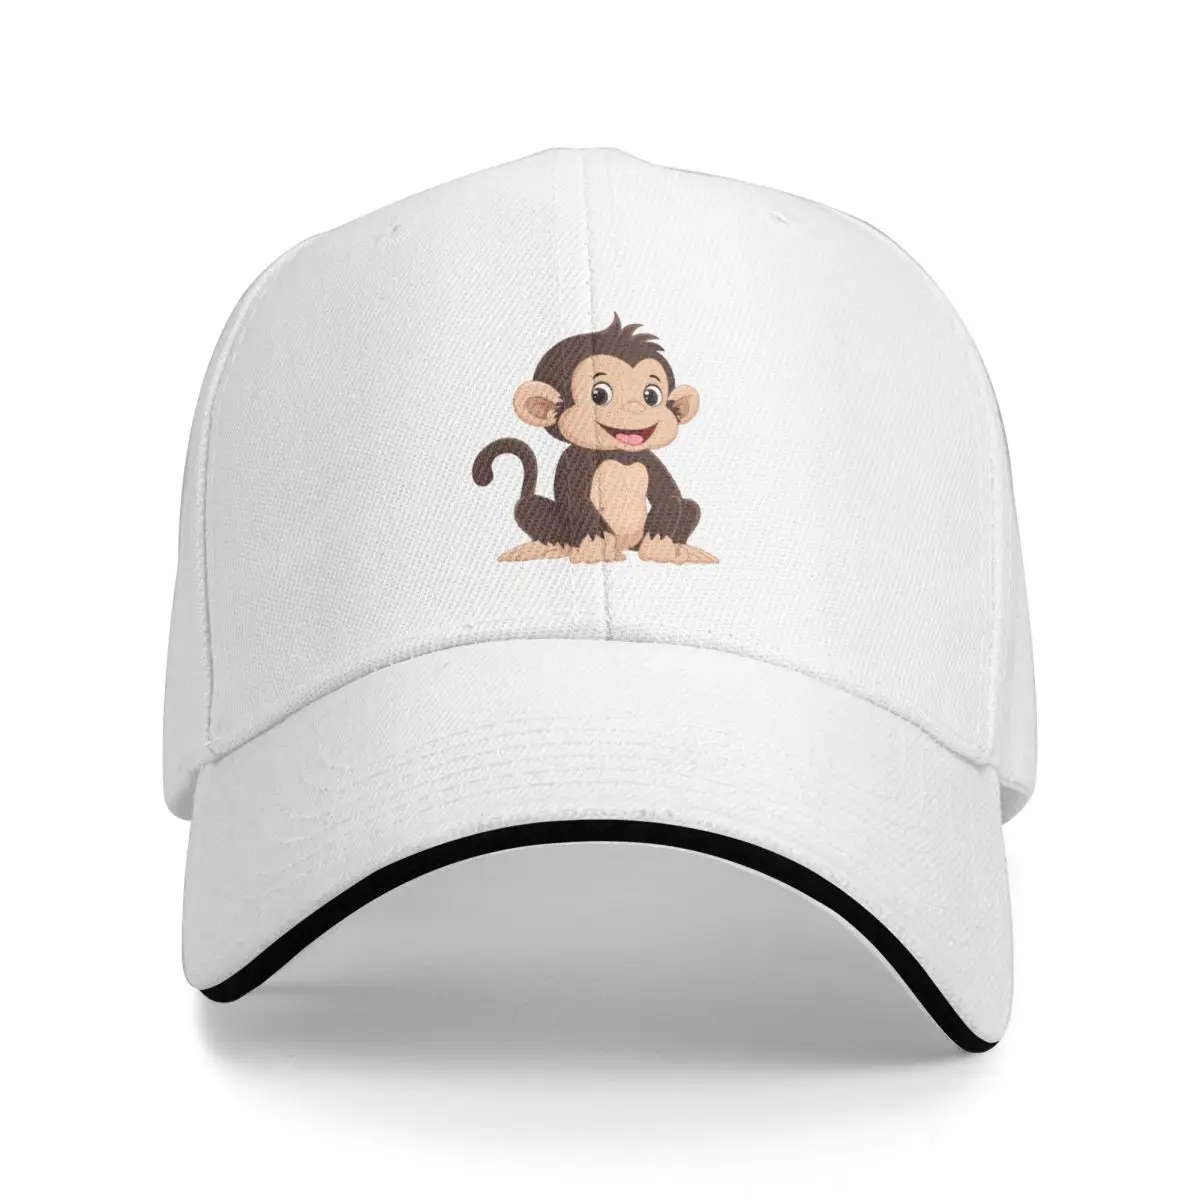 

Шапочка обезьяна бейсболка, бейсболки, мужские кепки wo, Мужская Солнцезащитная шляпа, кепка от солнца для женщин и мужчин